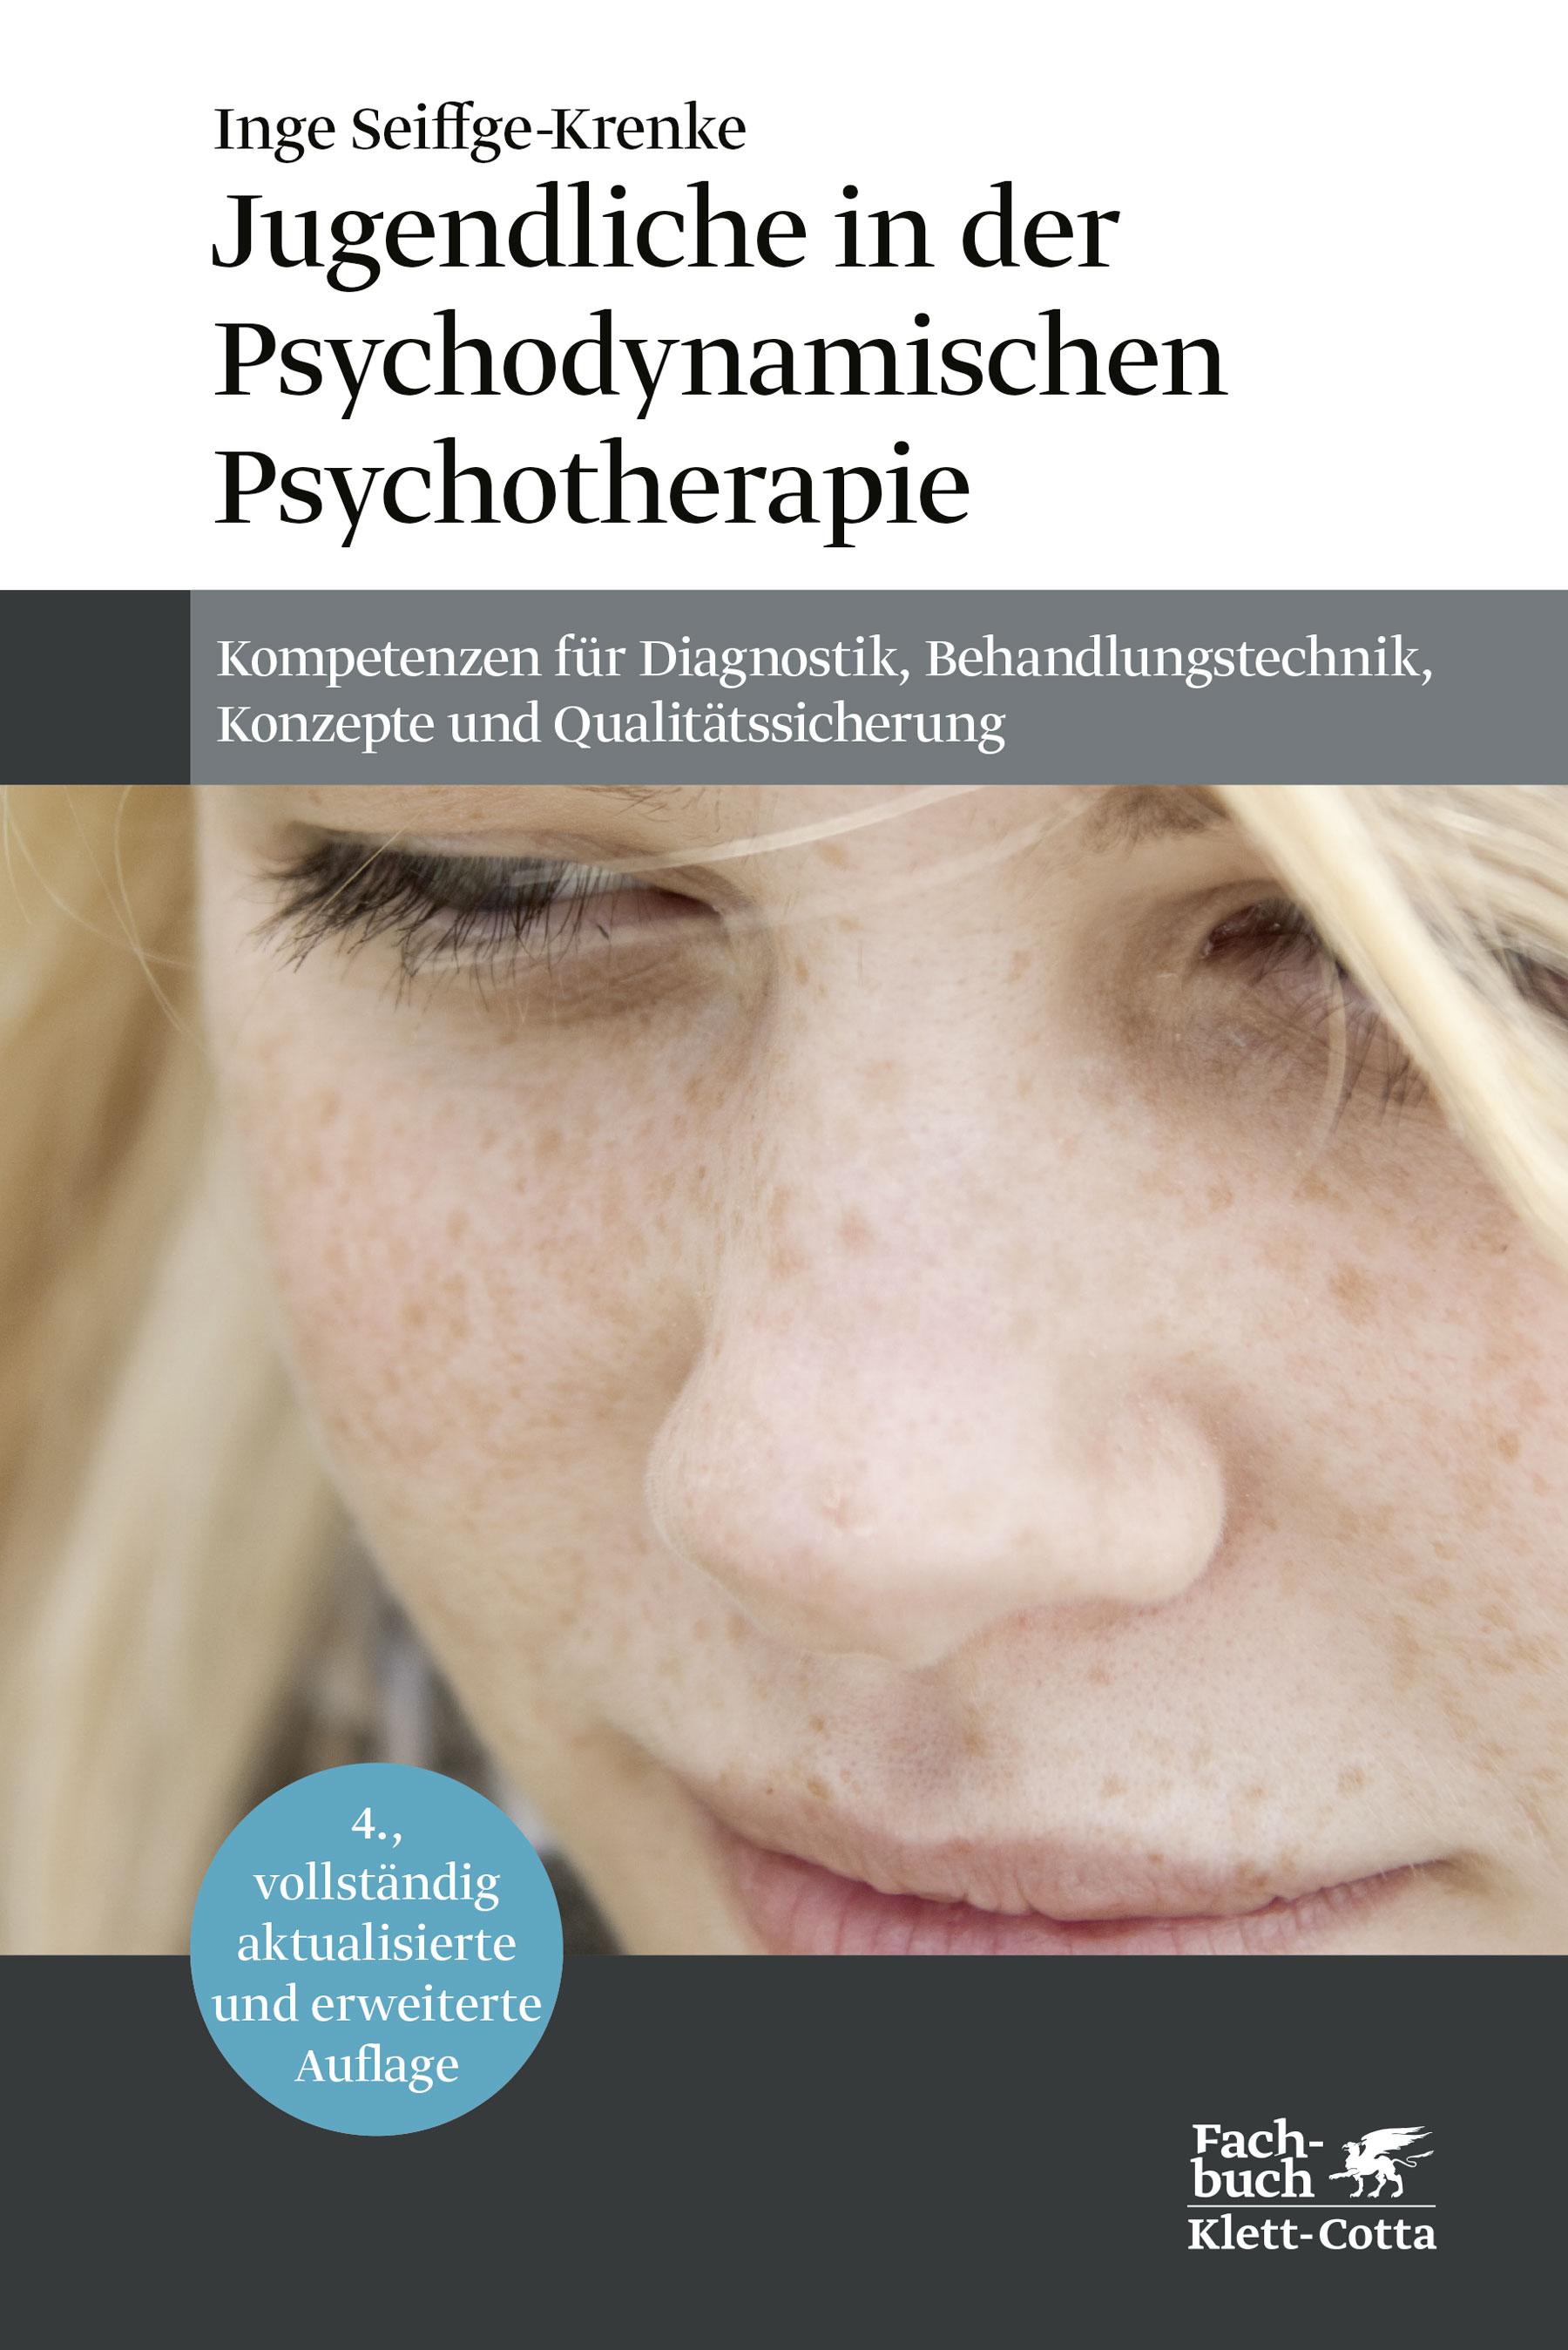 Jugendliche in der Psychodynamischen Psychotherapie, Inge Seiffge-Krenke - Inge Seiffge-Krenke